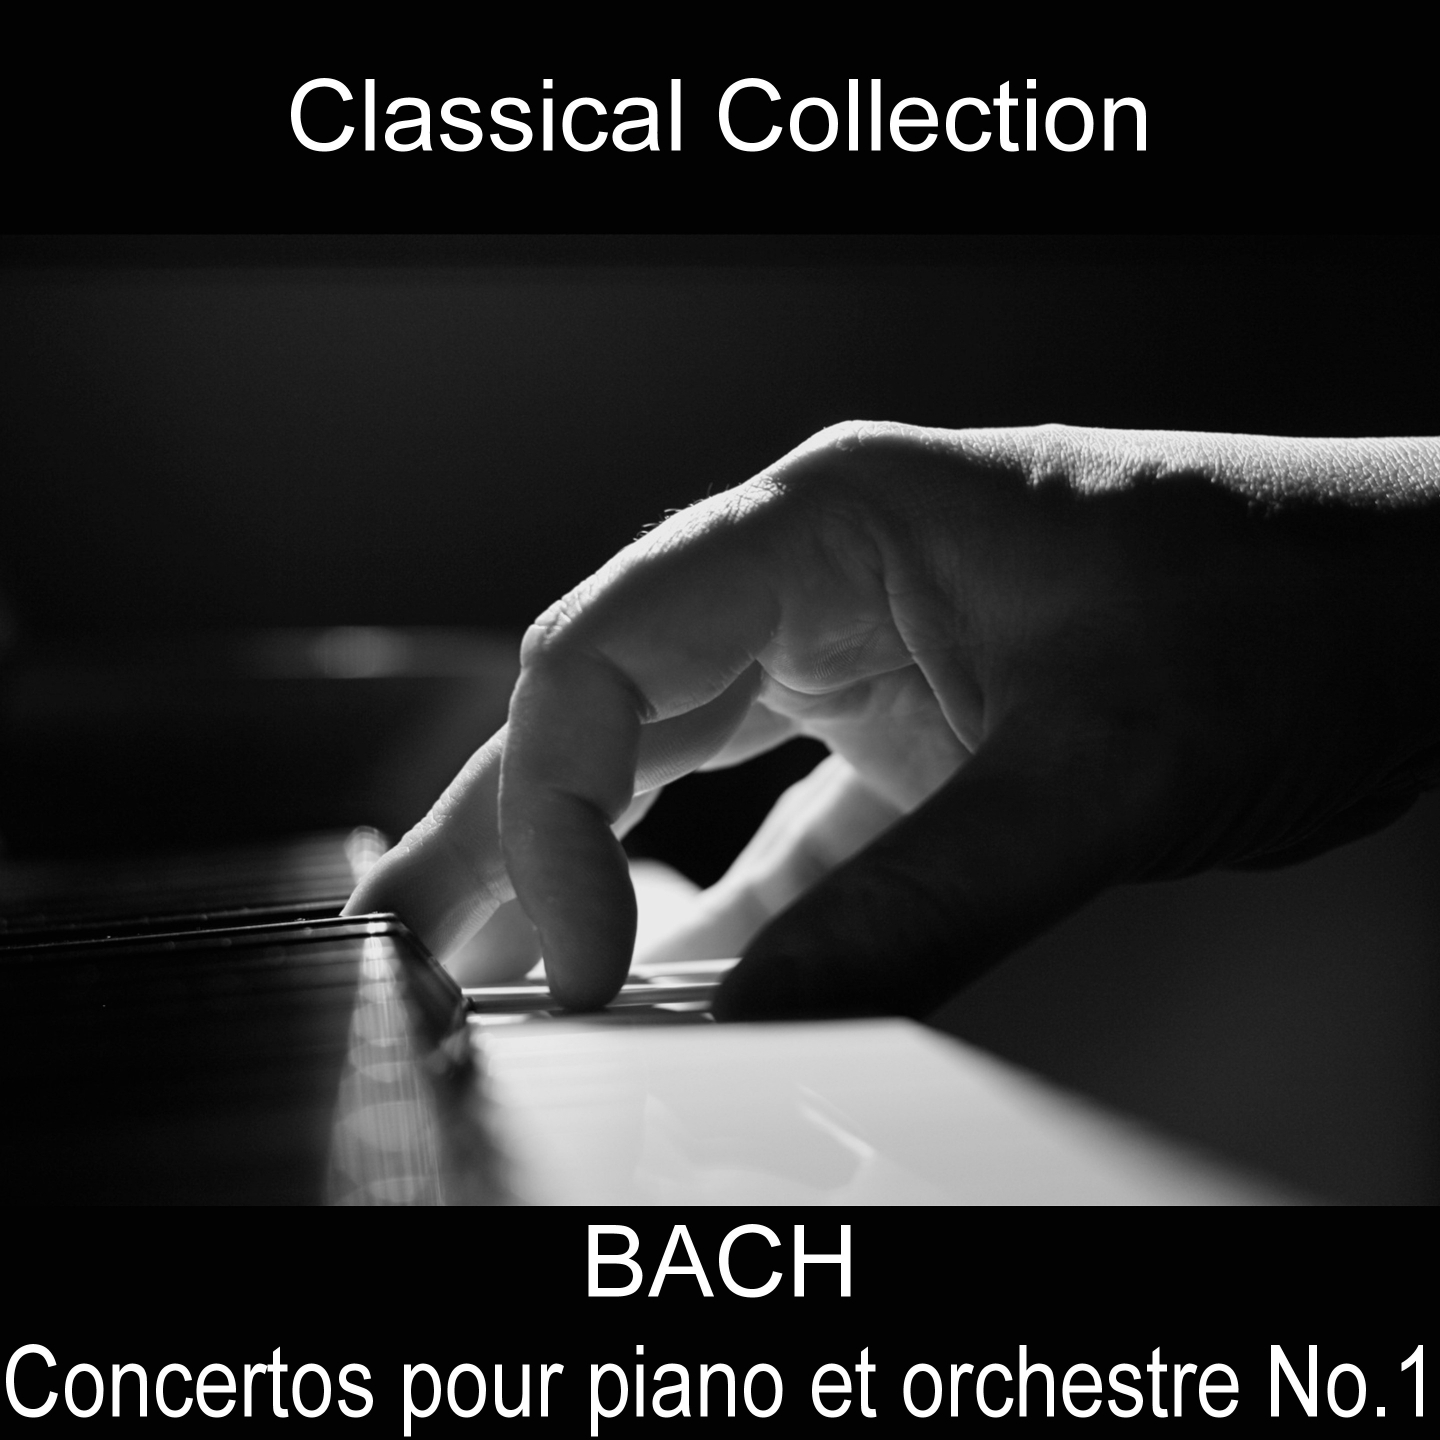 Concerto pour piano et orchestre No.1 in D Minor, BWV. 1052: II. Adagio